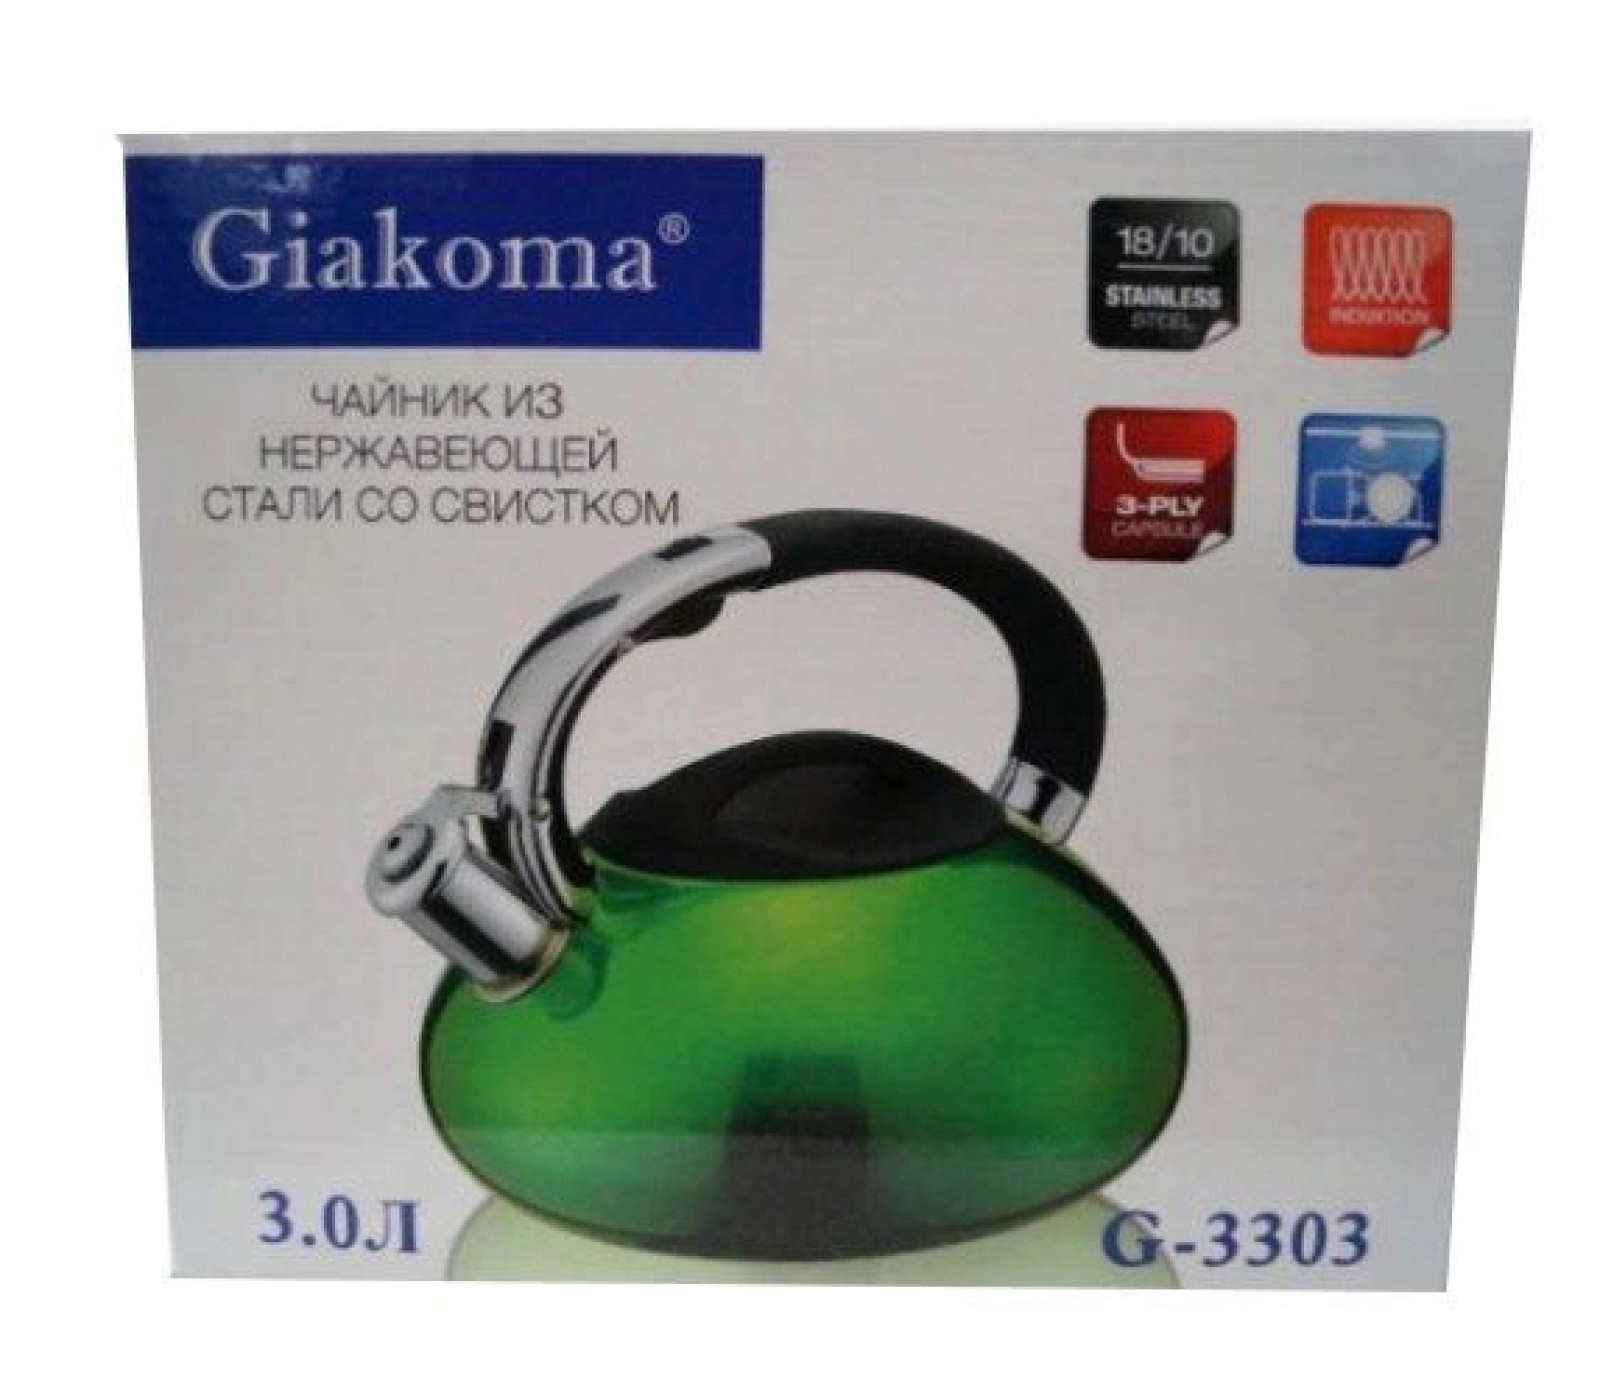 Чайник Giakoma G-3303 3L для газовых и электрических плит (12) 205994